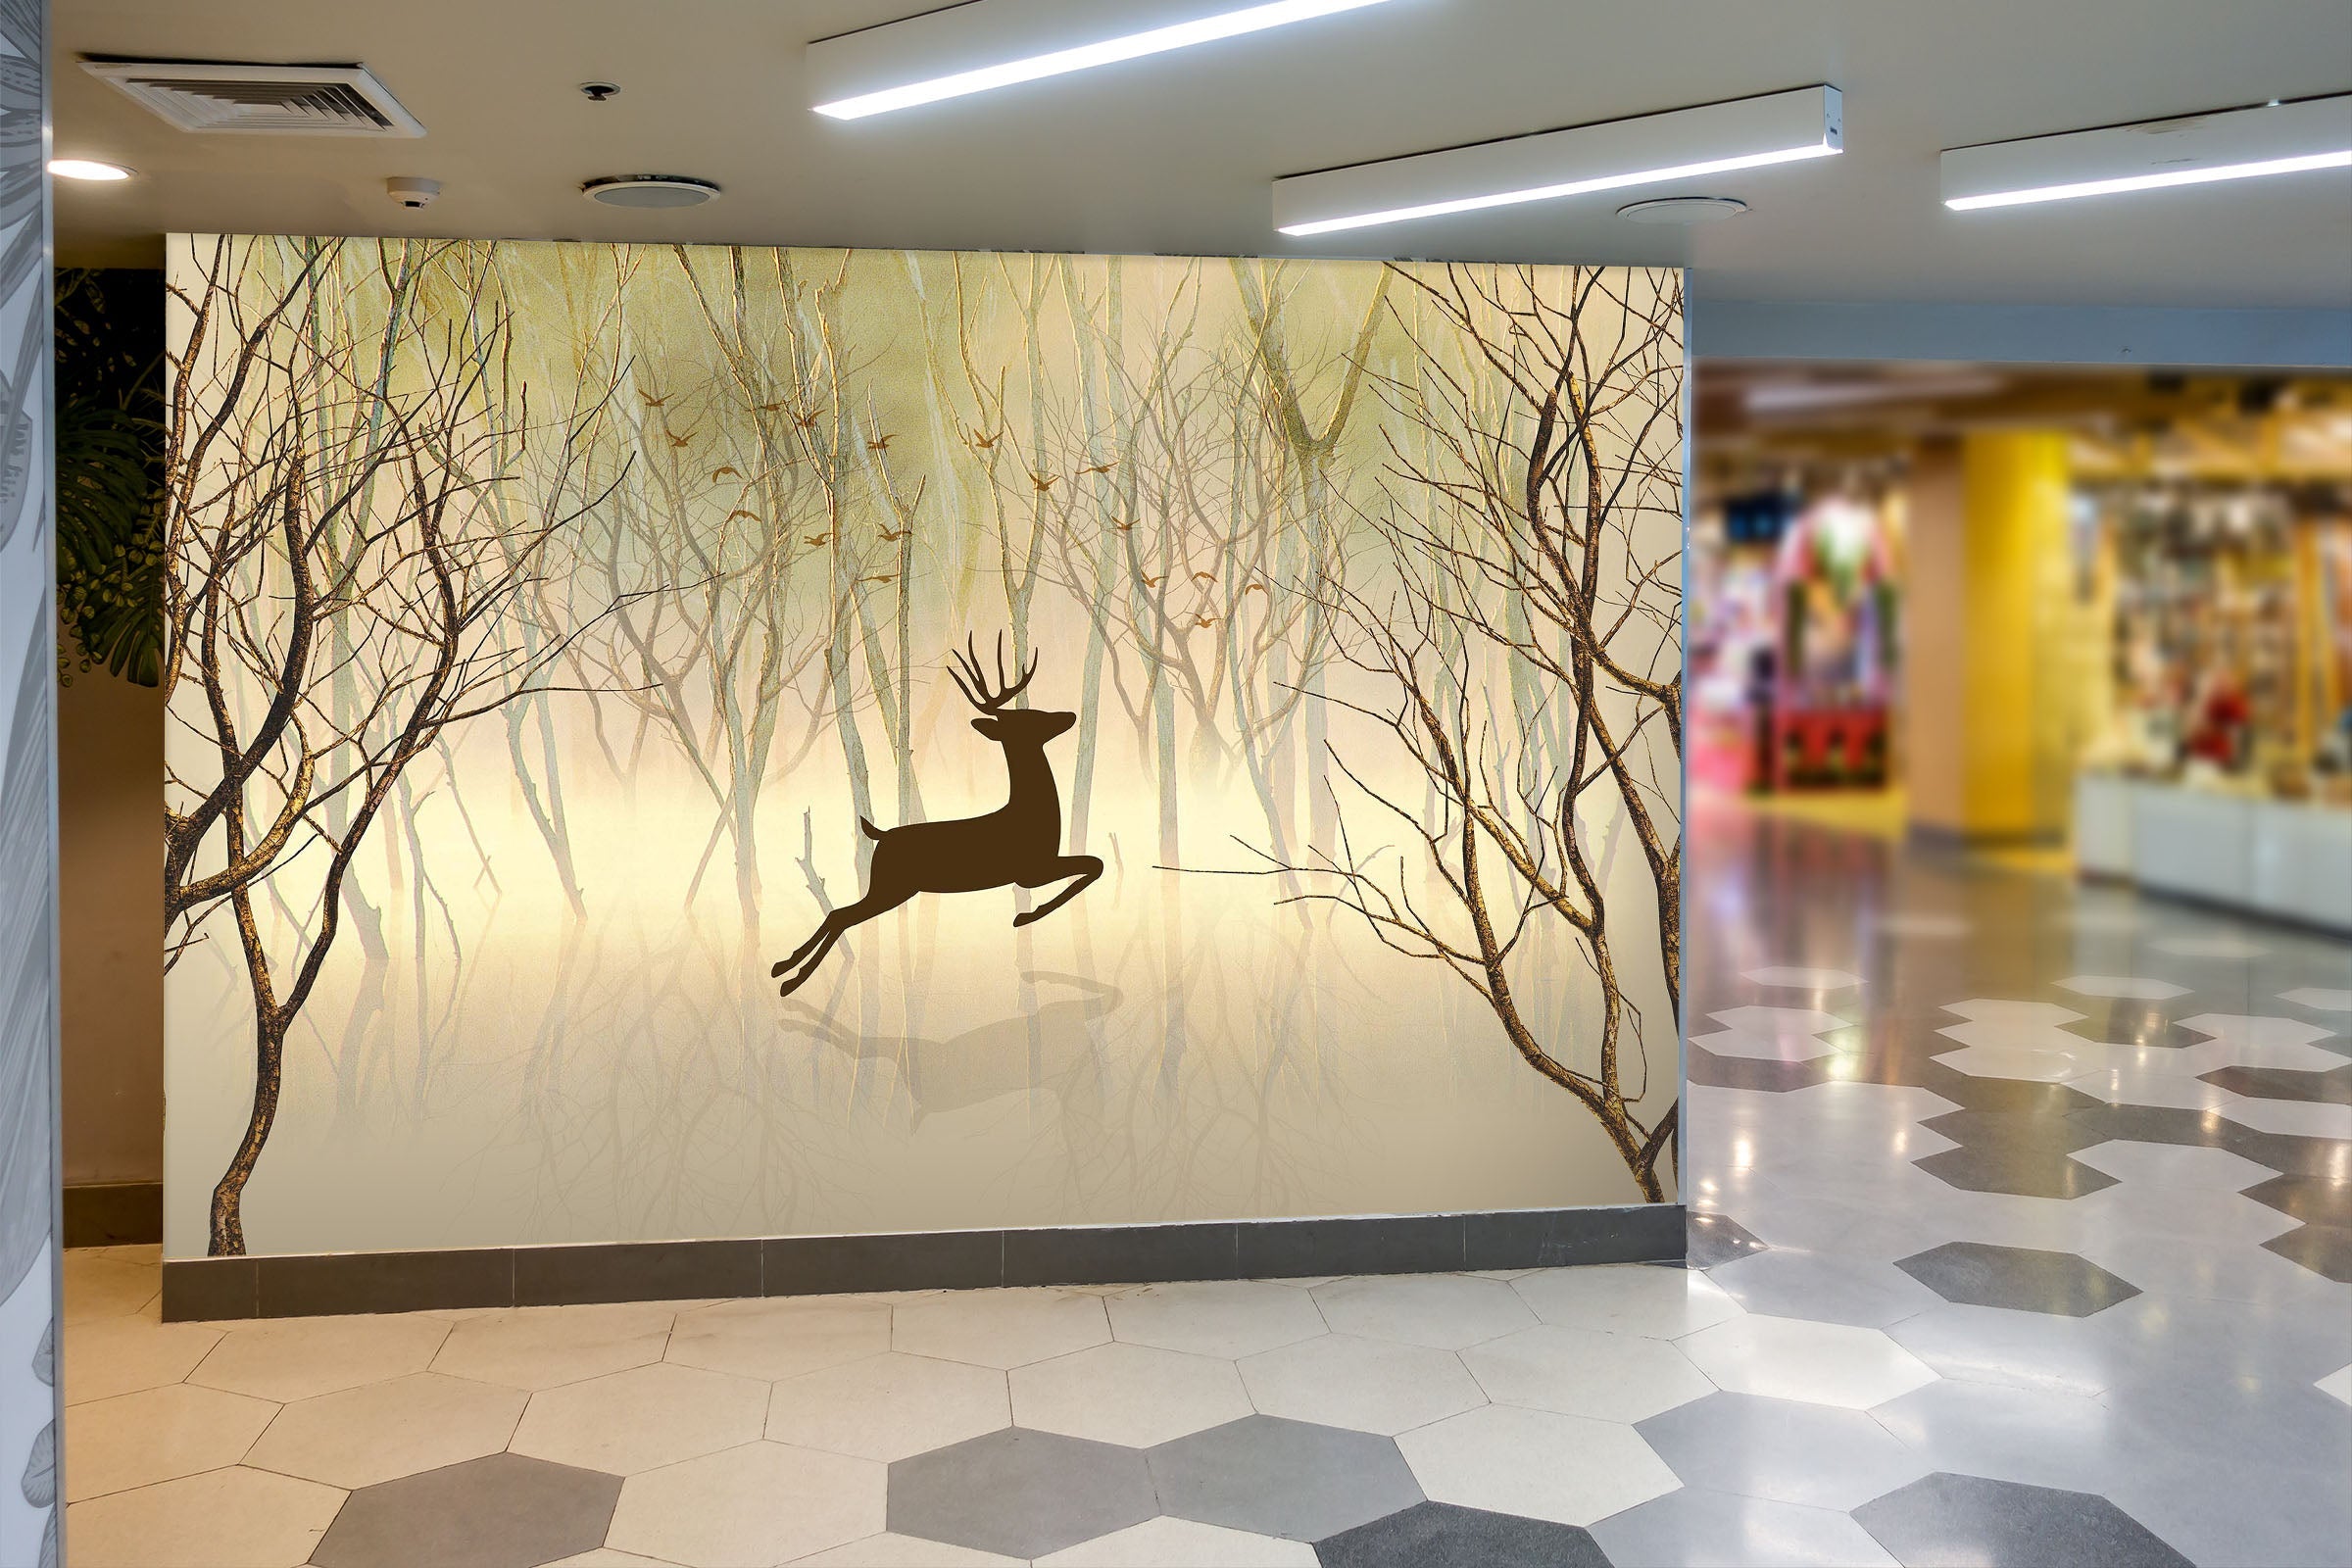 3D Jumping Deer 118 Wall Murals Wallpaper AJ Wallpaper 2 